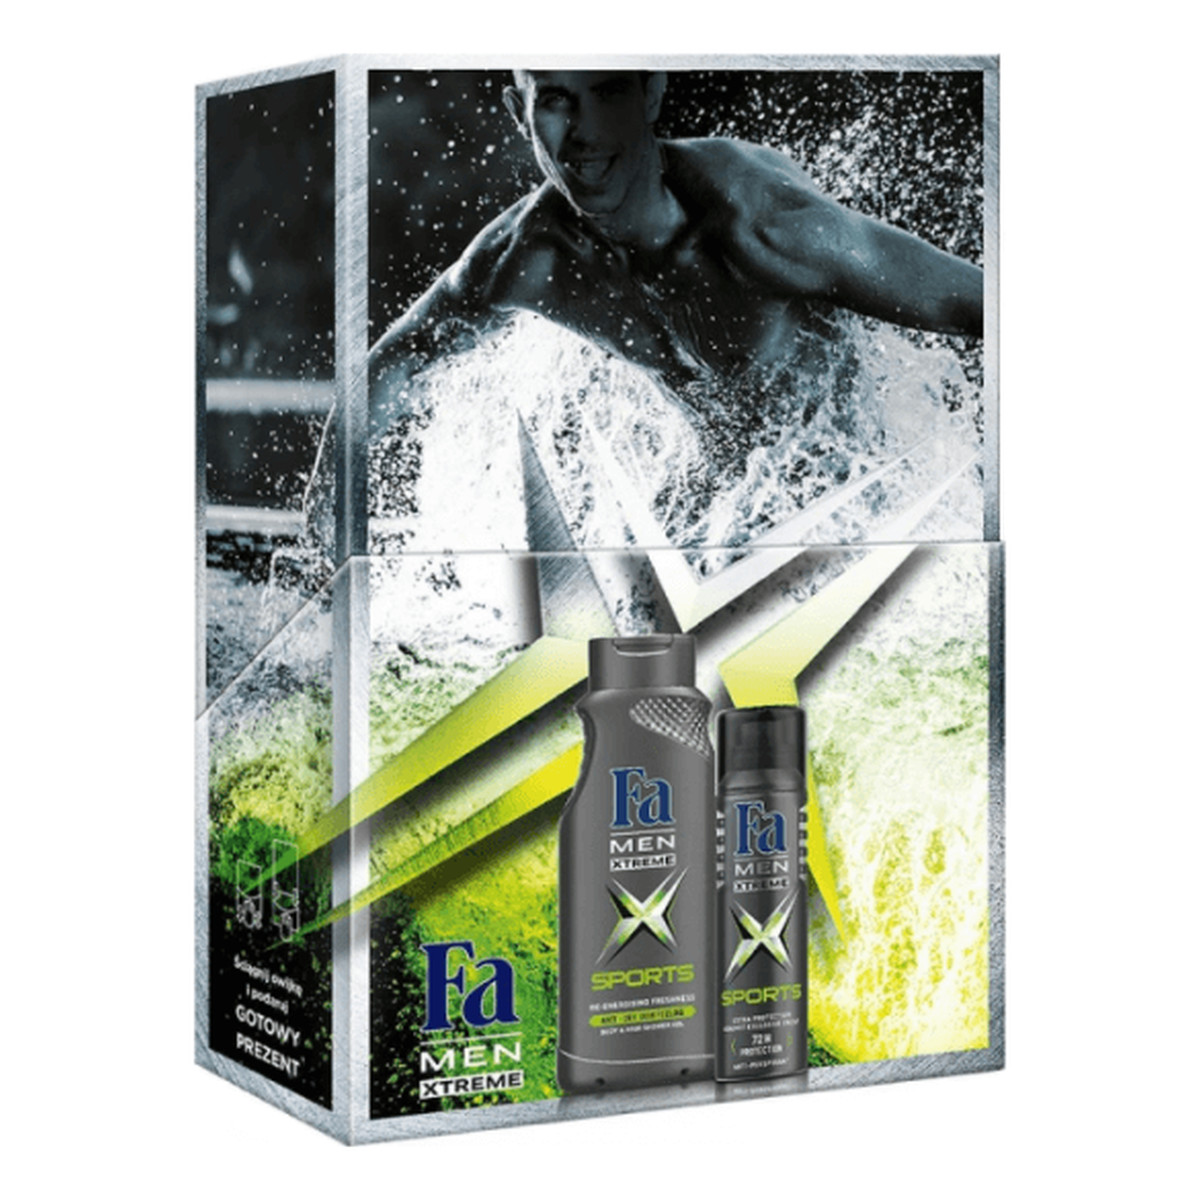 Fa Xtreme Sports Zestaw prezentowy męski żel pod prysznic + dezodorant spray